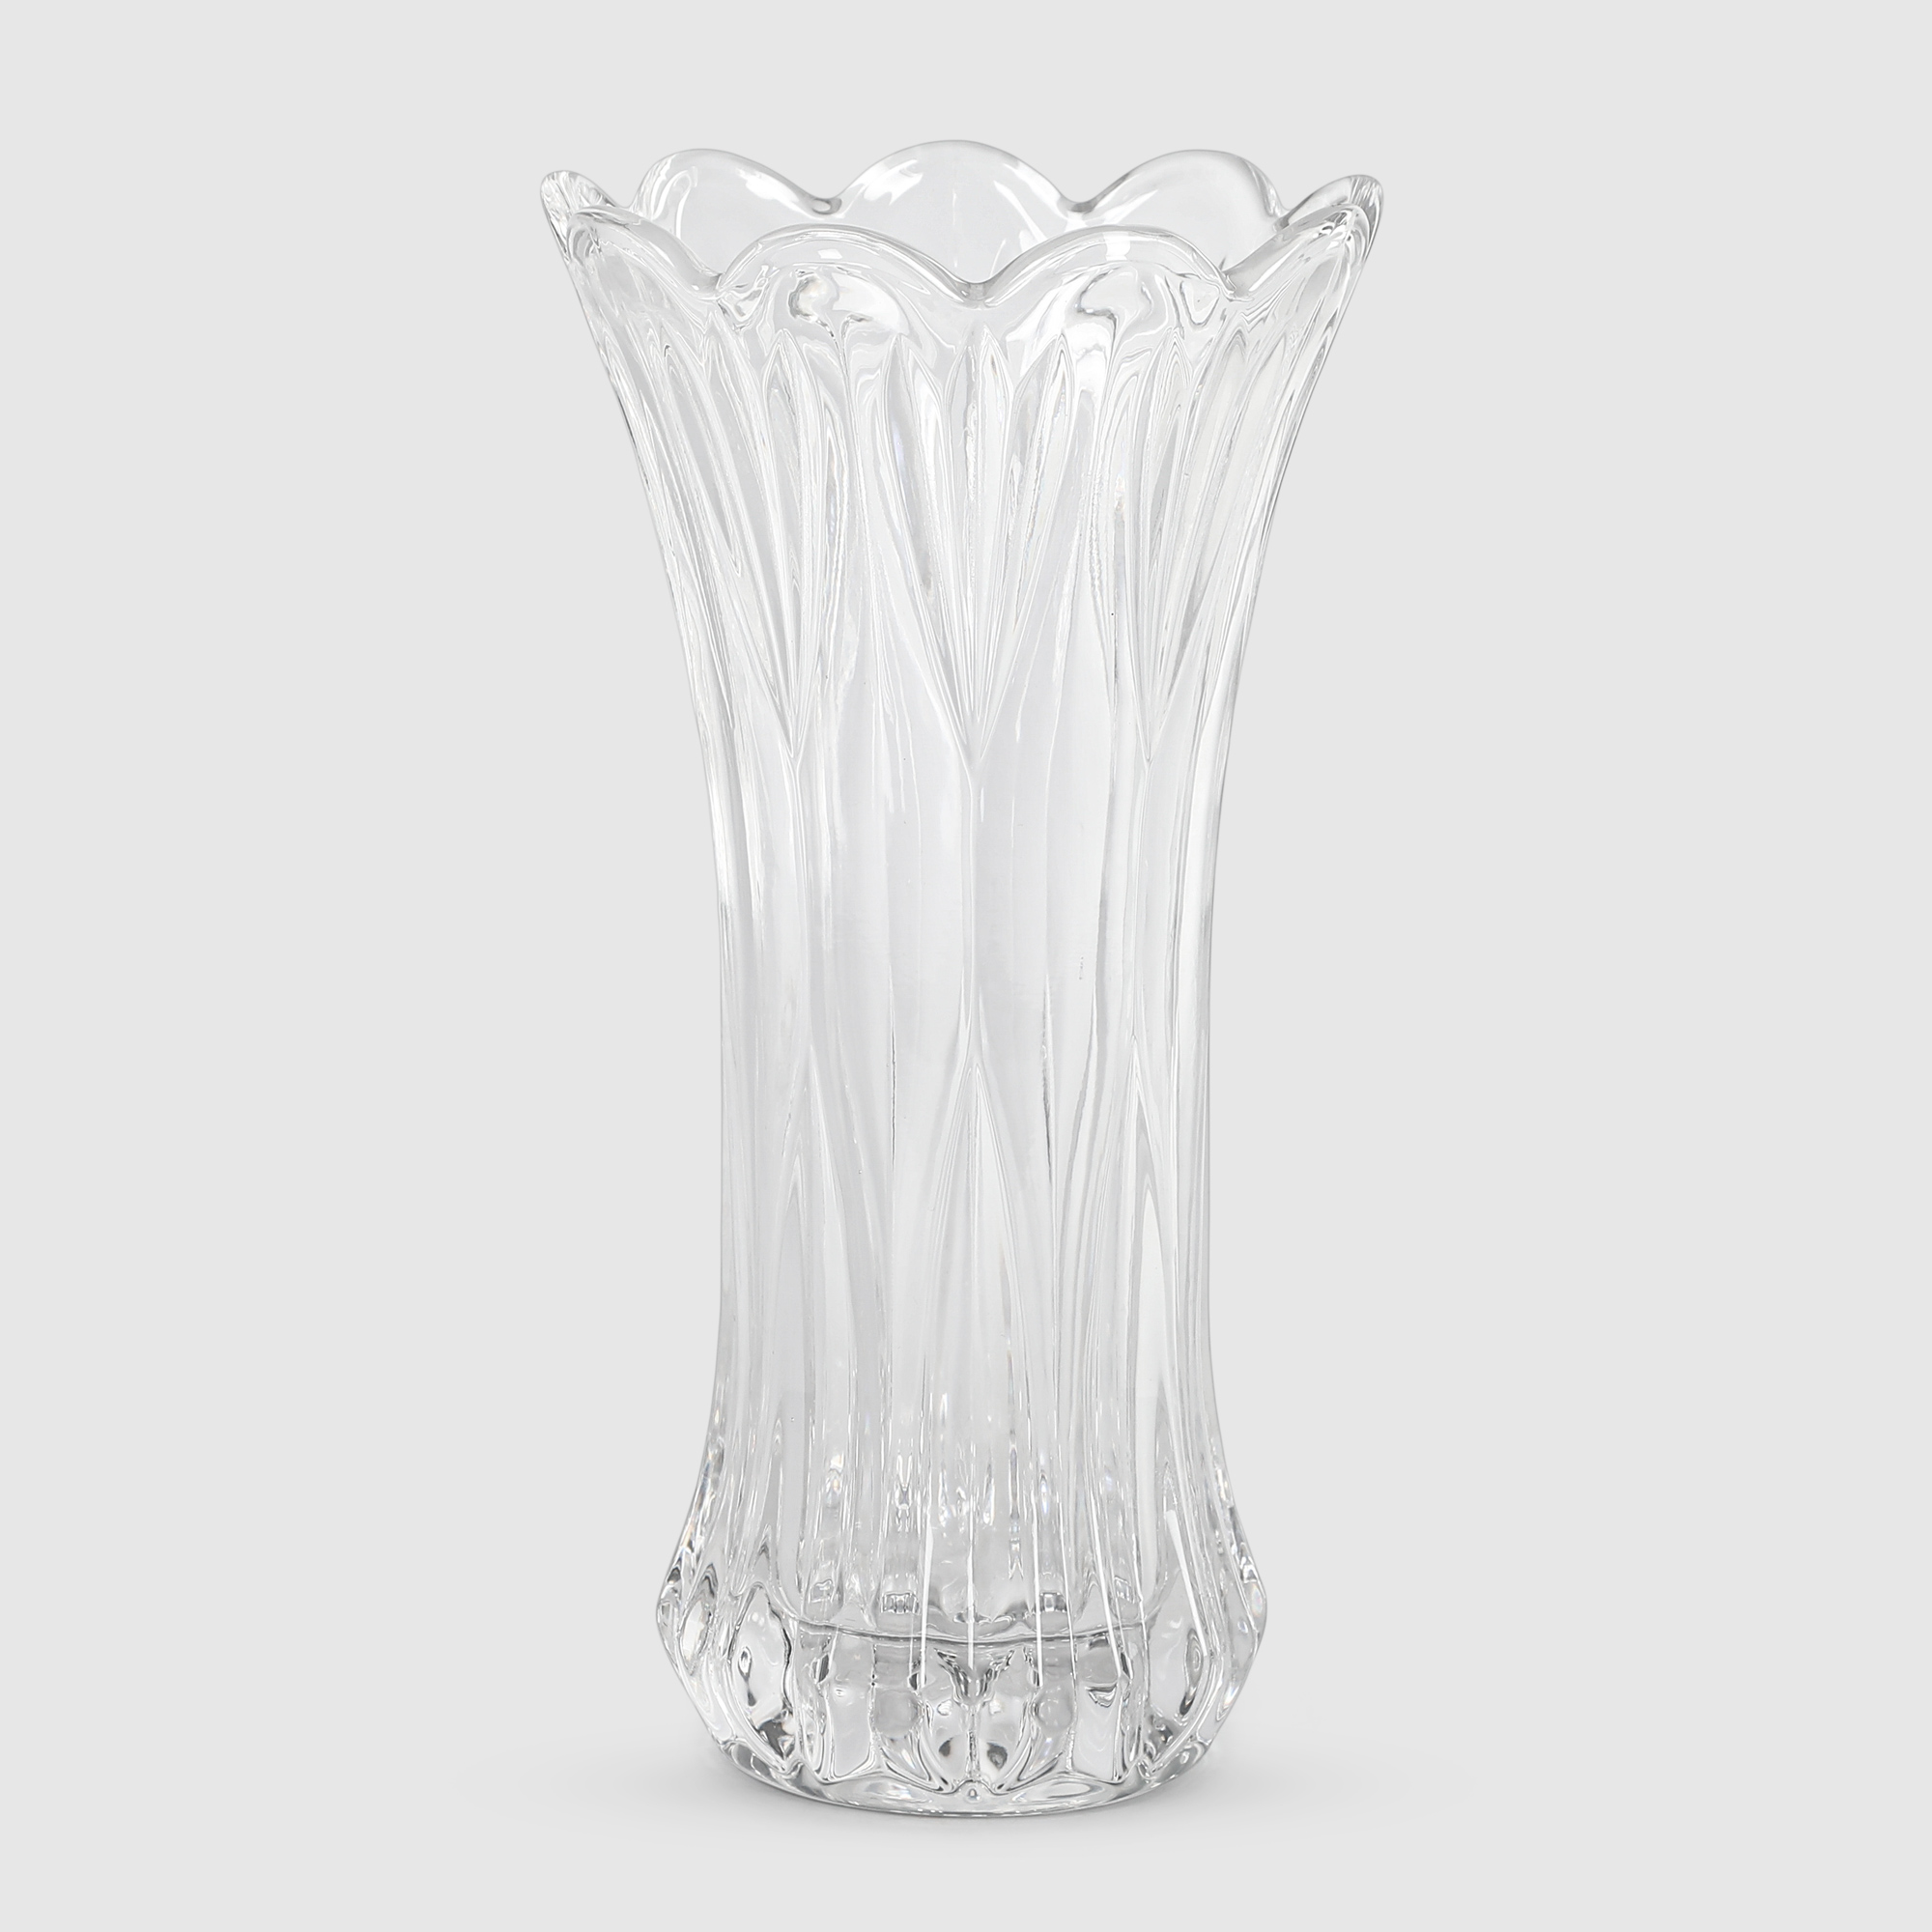 Ваза Anhuaglass стеклянная 12,7х7,7х24,4 см прозрачная